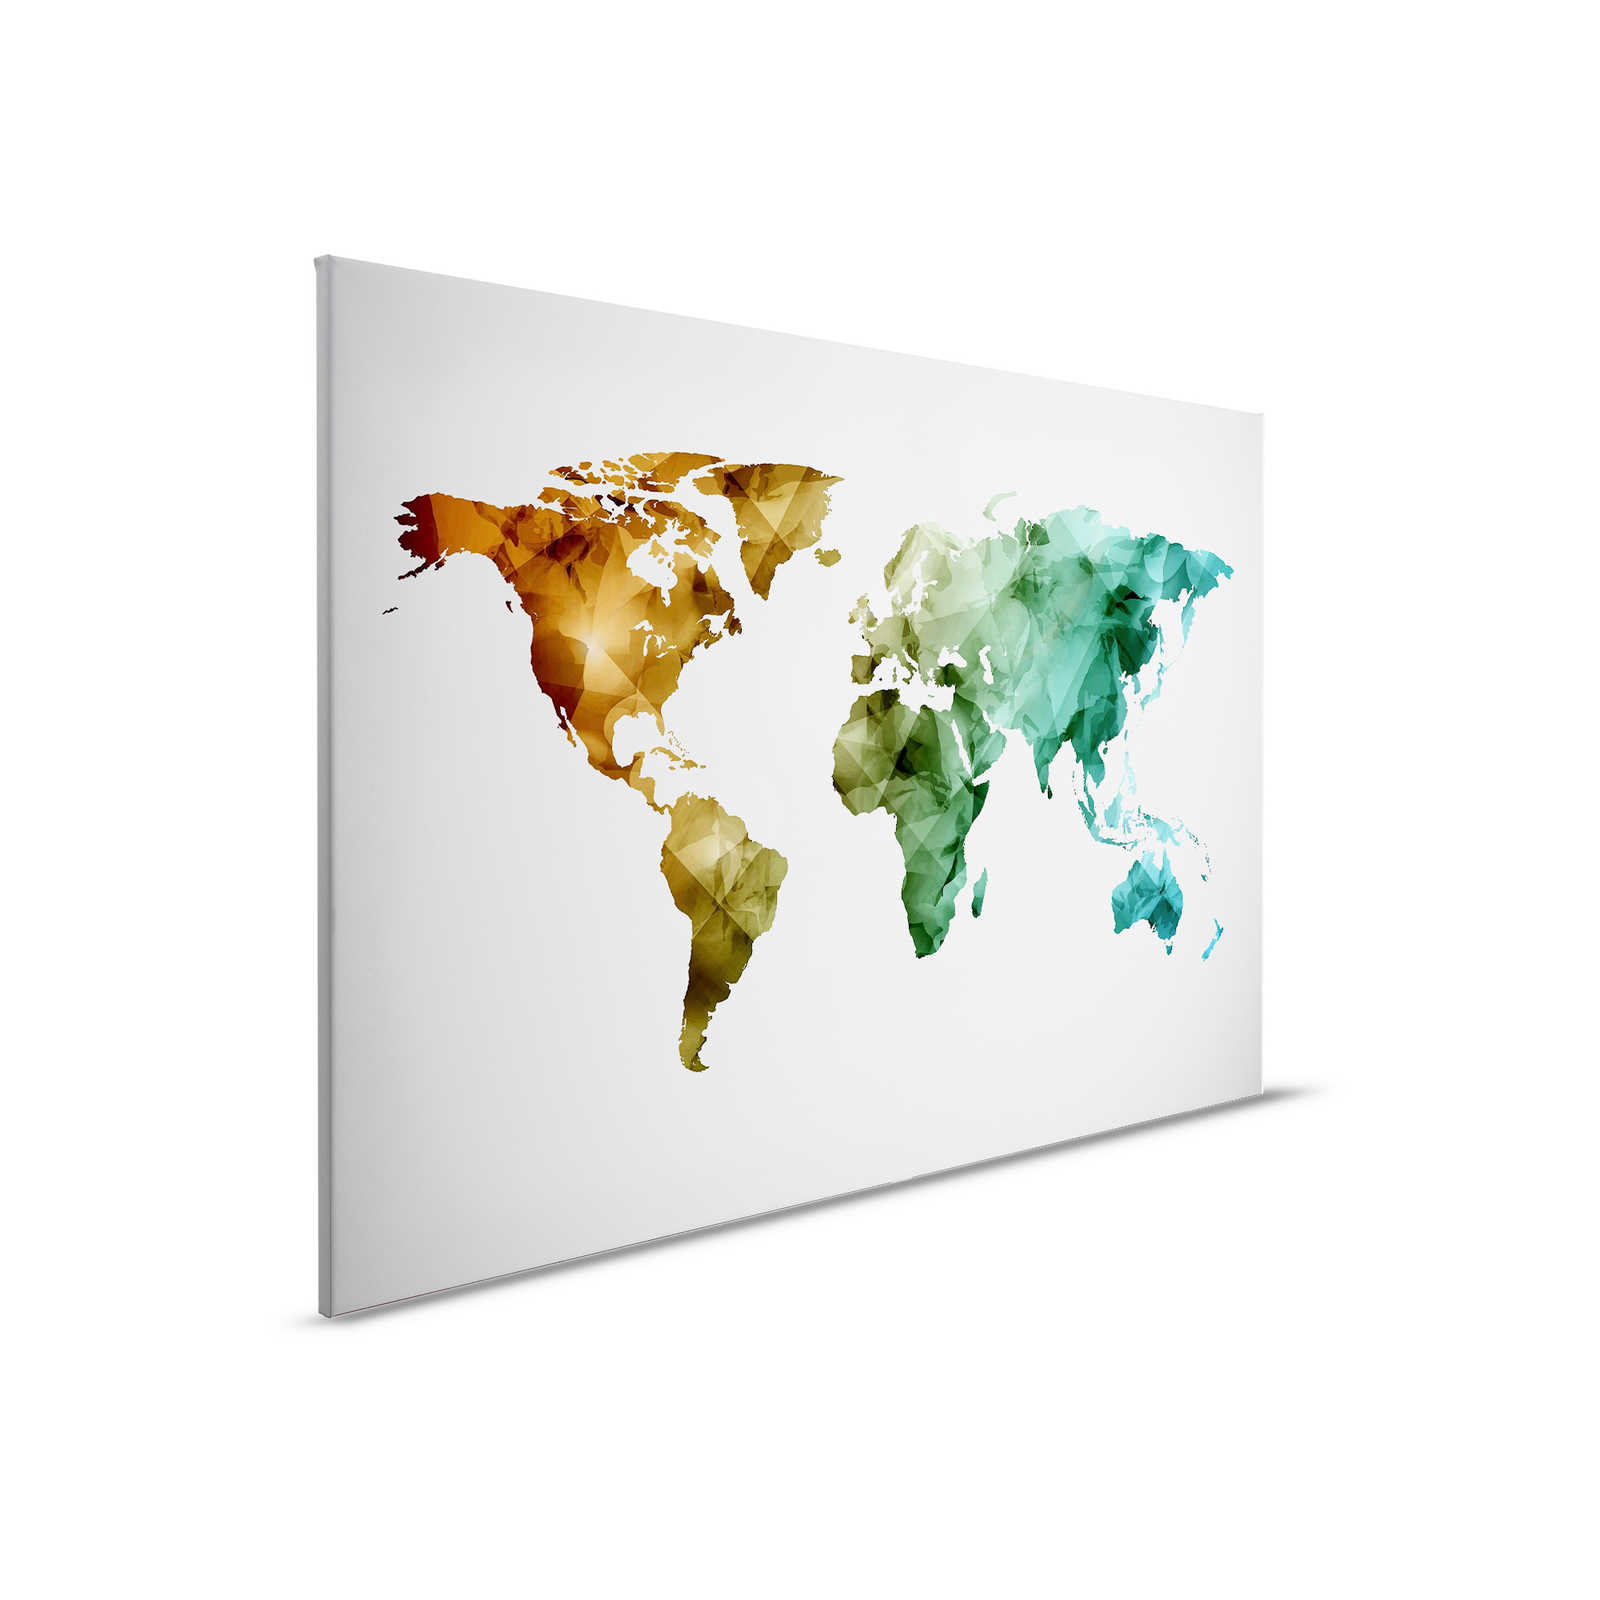         Leinwand mit Weltkarte aus grafischen Elementen | WorldGrafic 1 – 0,90 m x 0,60 m
    